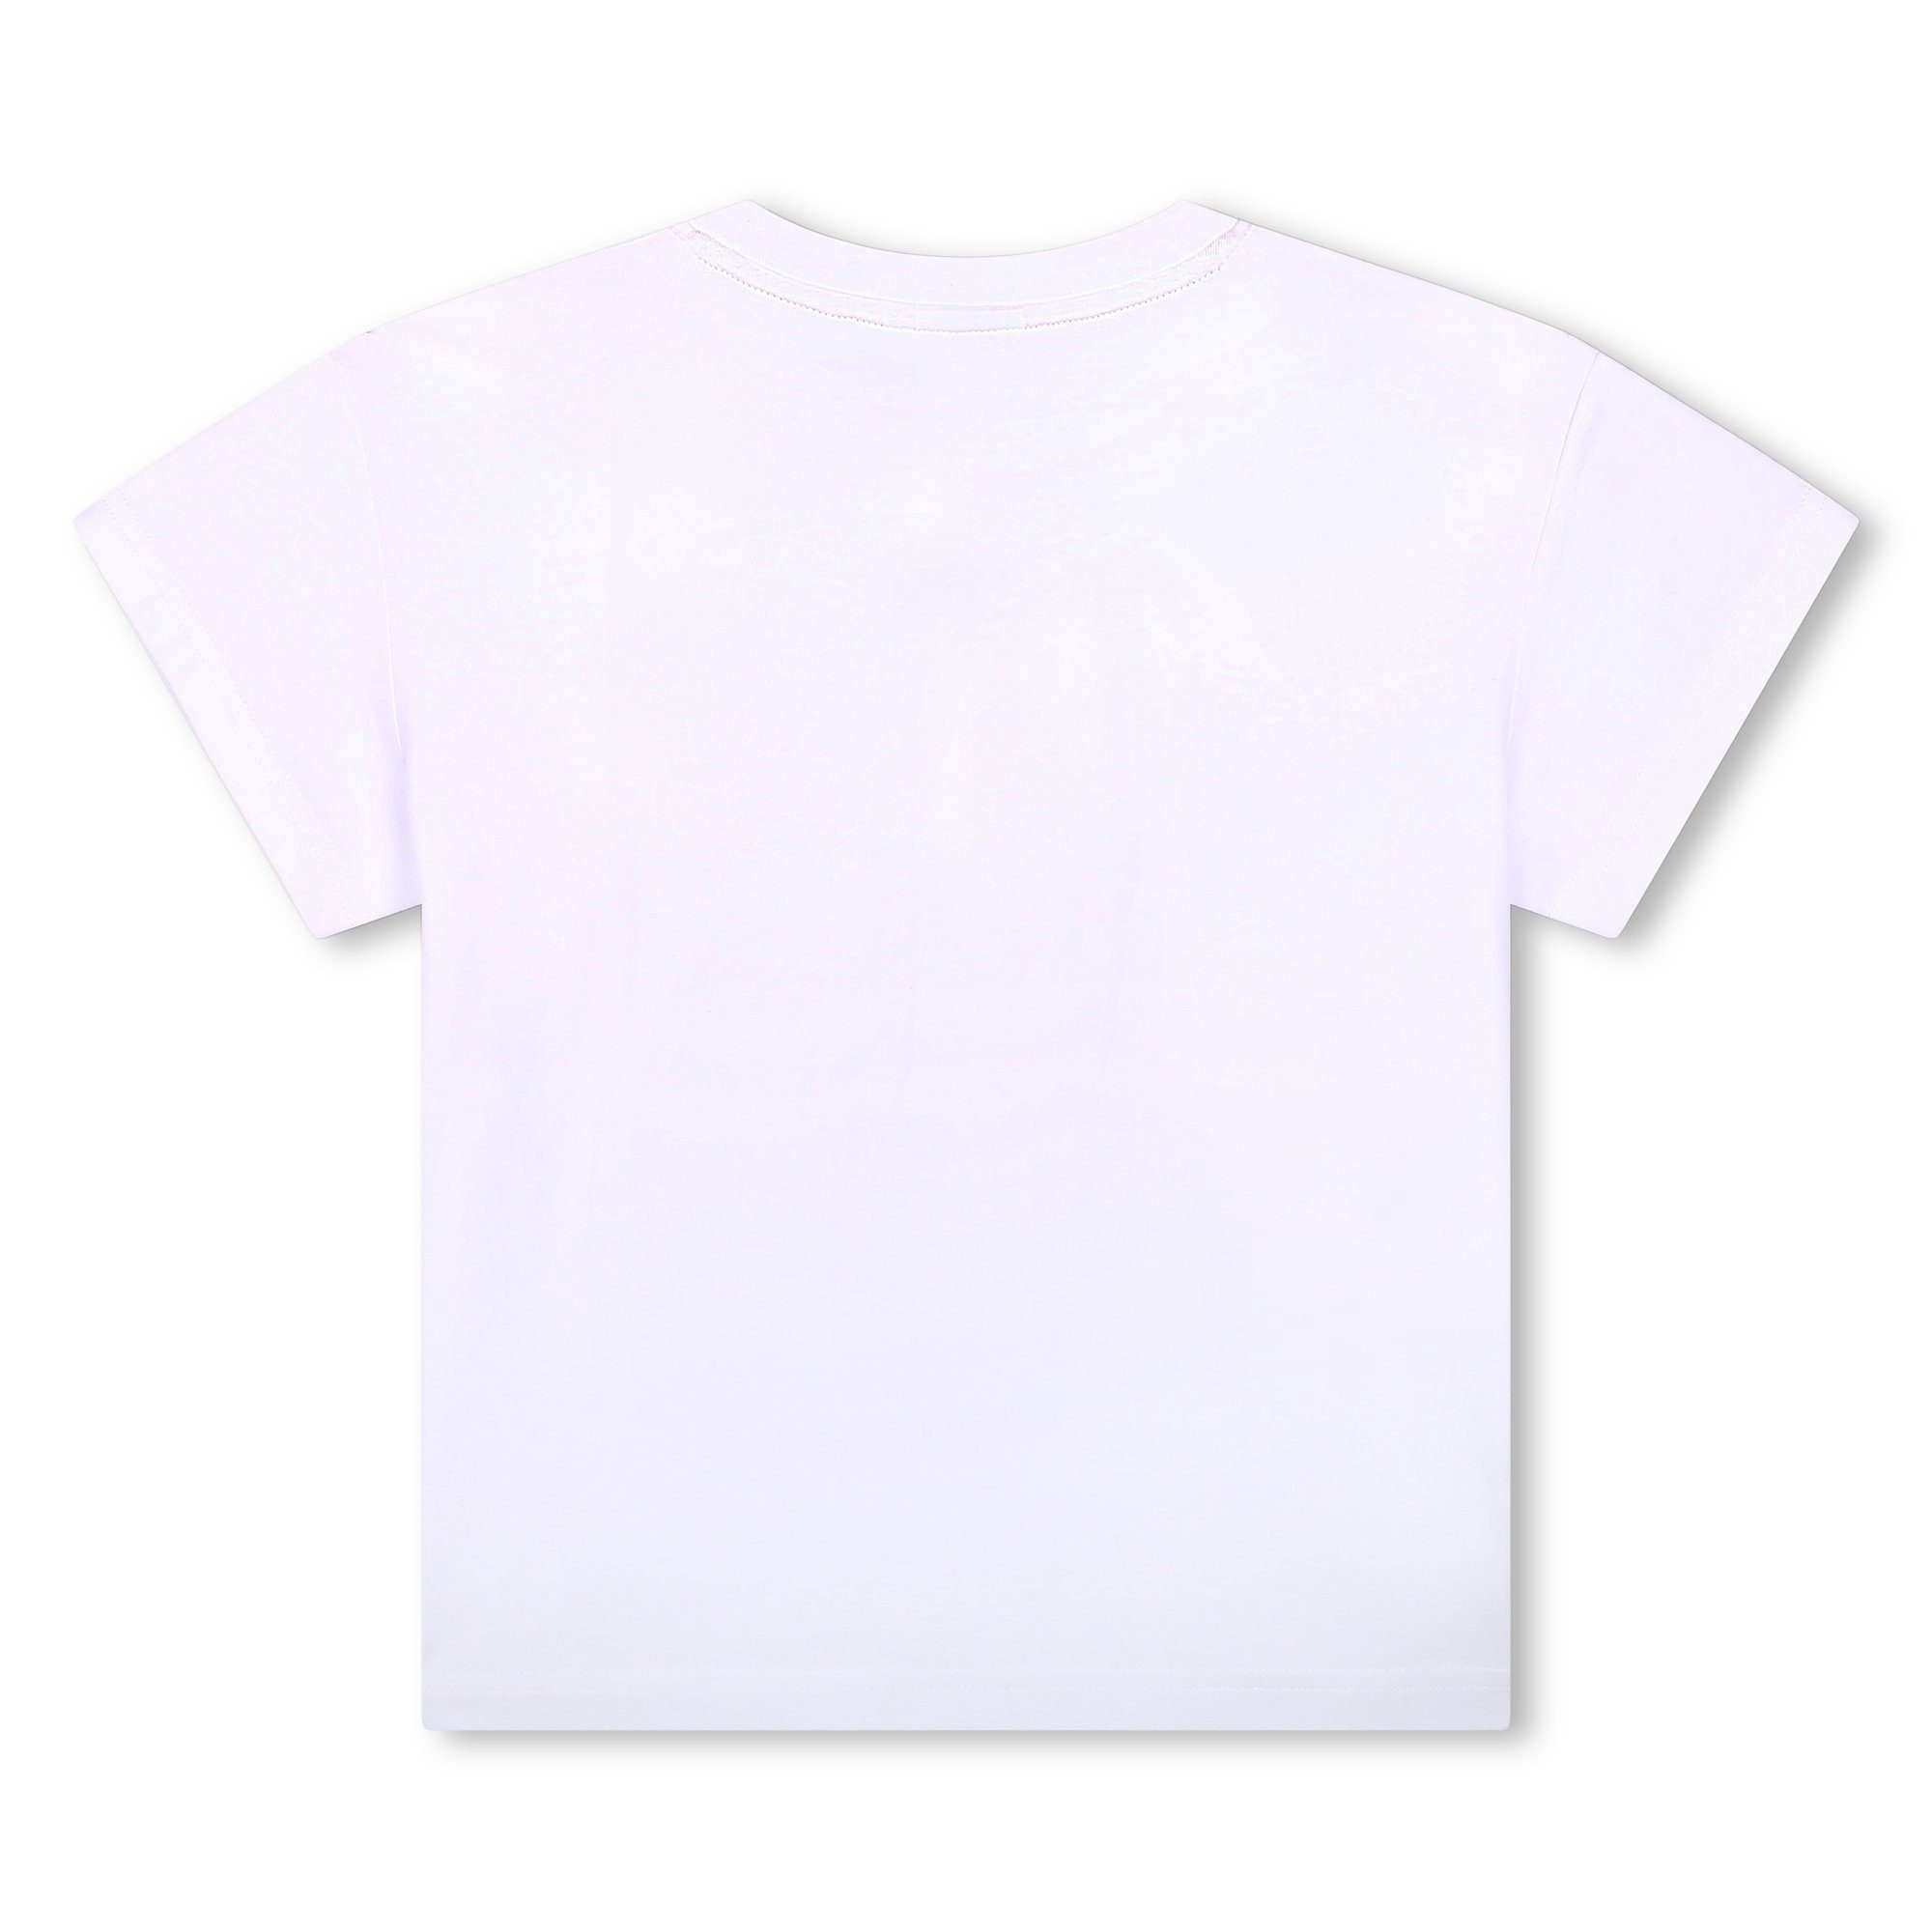 Druck aus HUGO mit T-Shirt Logo Biobaumwolle weiß Print-Shirt Kinder kurzarm in HUGO